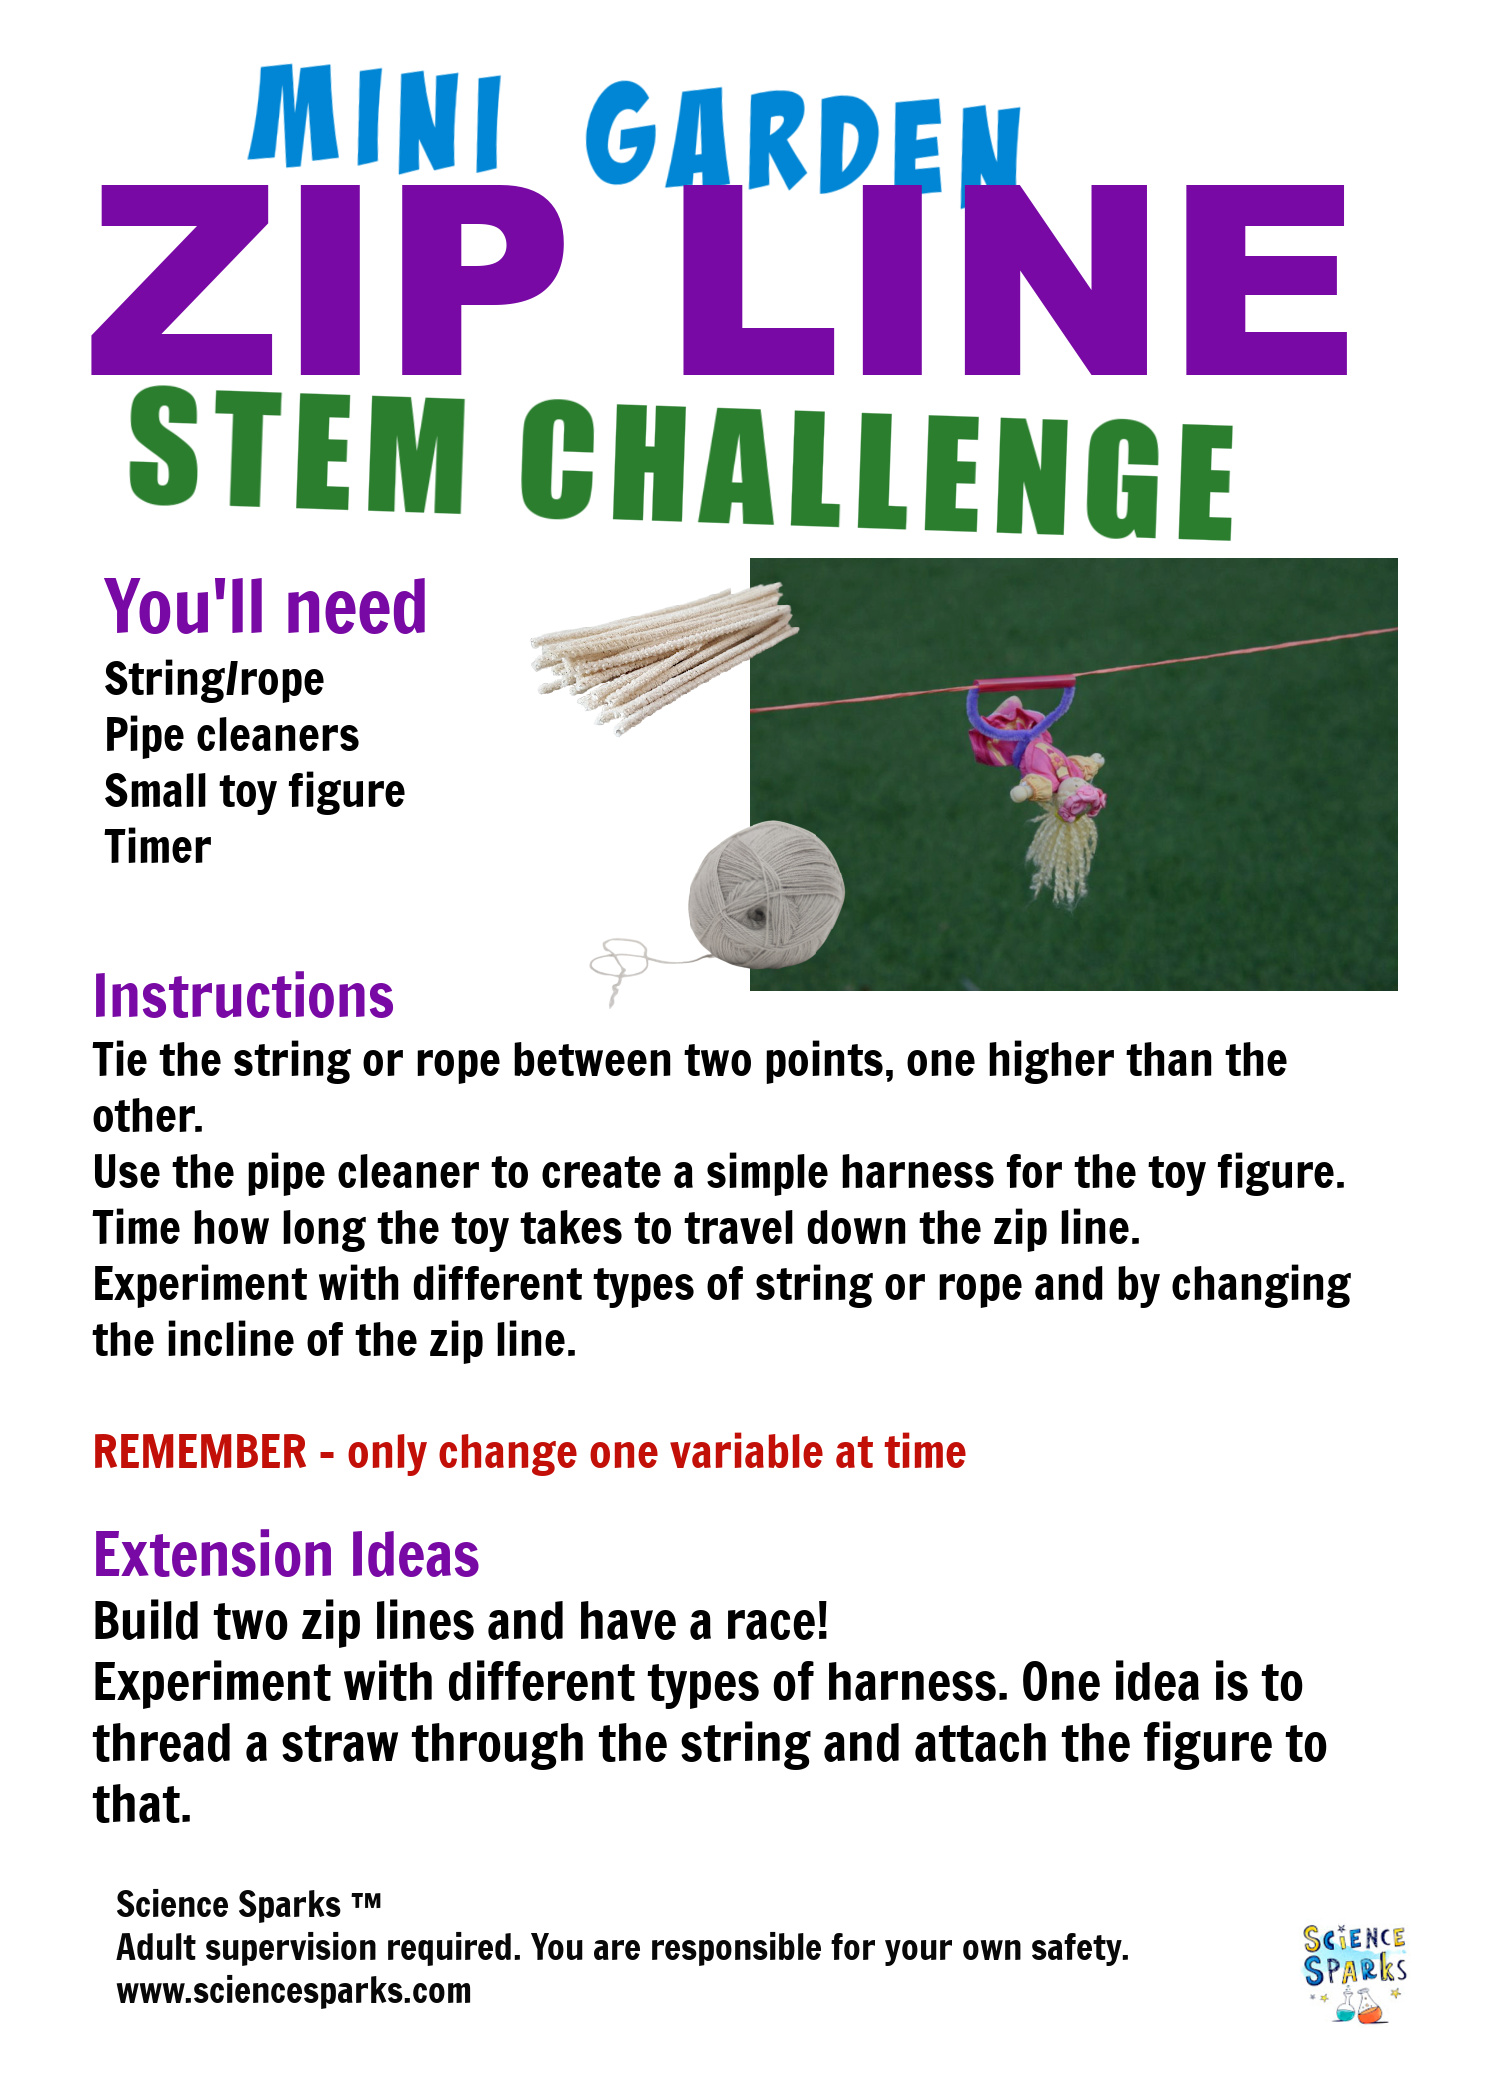 Mini garden zip line STEM challenge instructions